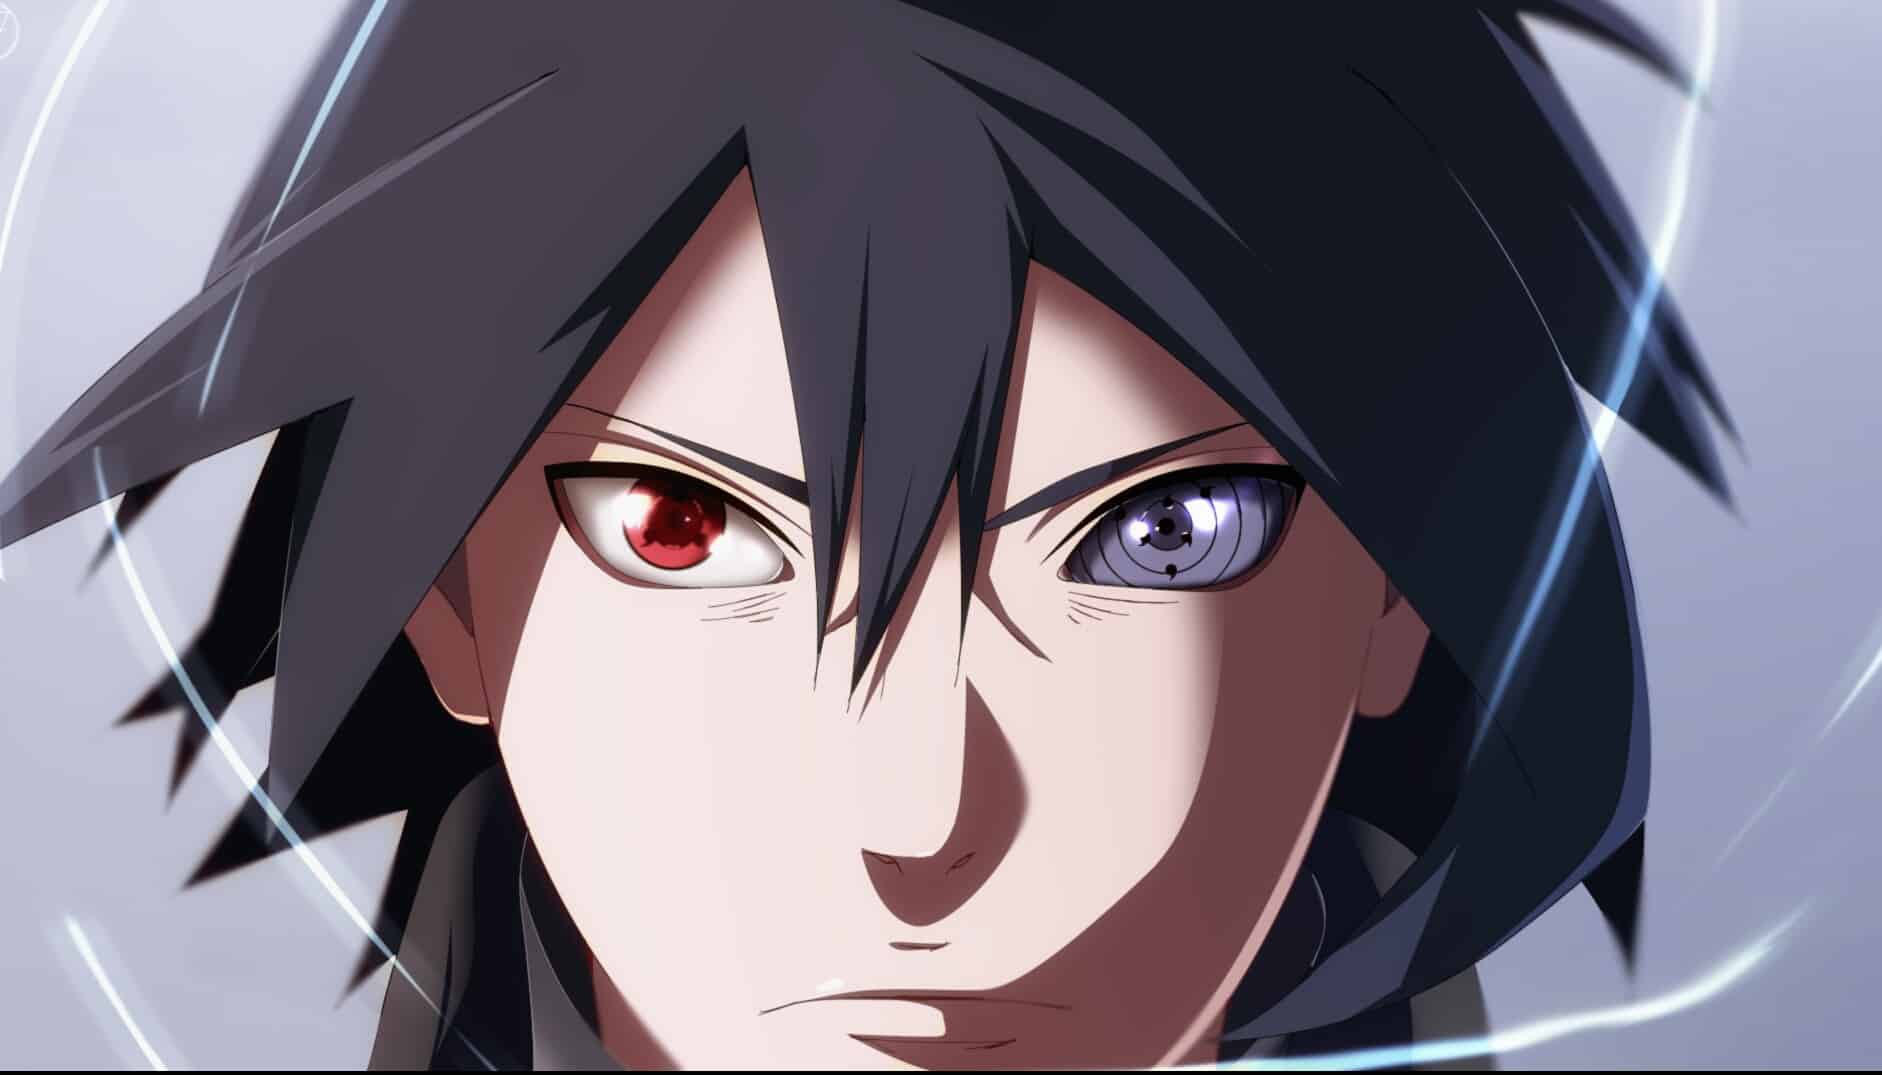 Nếu bạn đang tìm kiếm một nhân vật anime đầy nghị lực và tài năng, hãy xem hình ảnh về Obito Uchiha - một anh hùng đáng nhớ trong series Naruto!